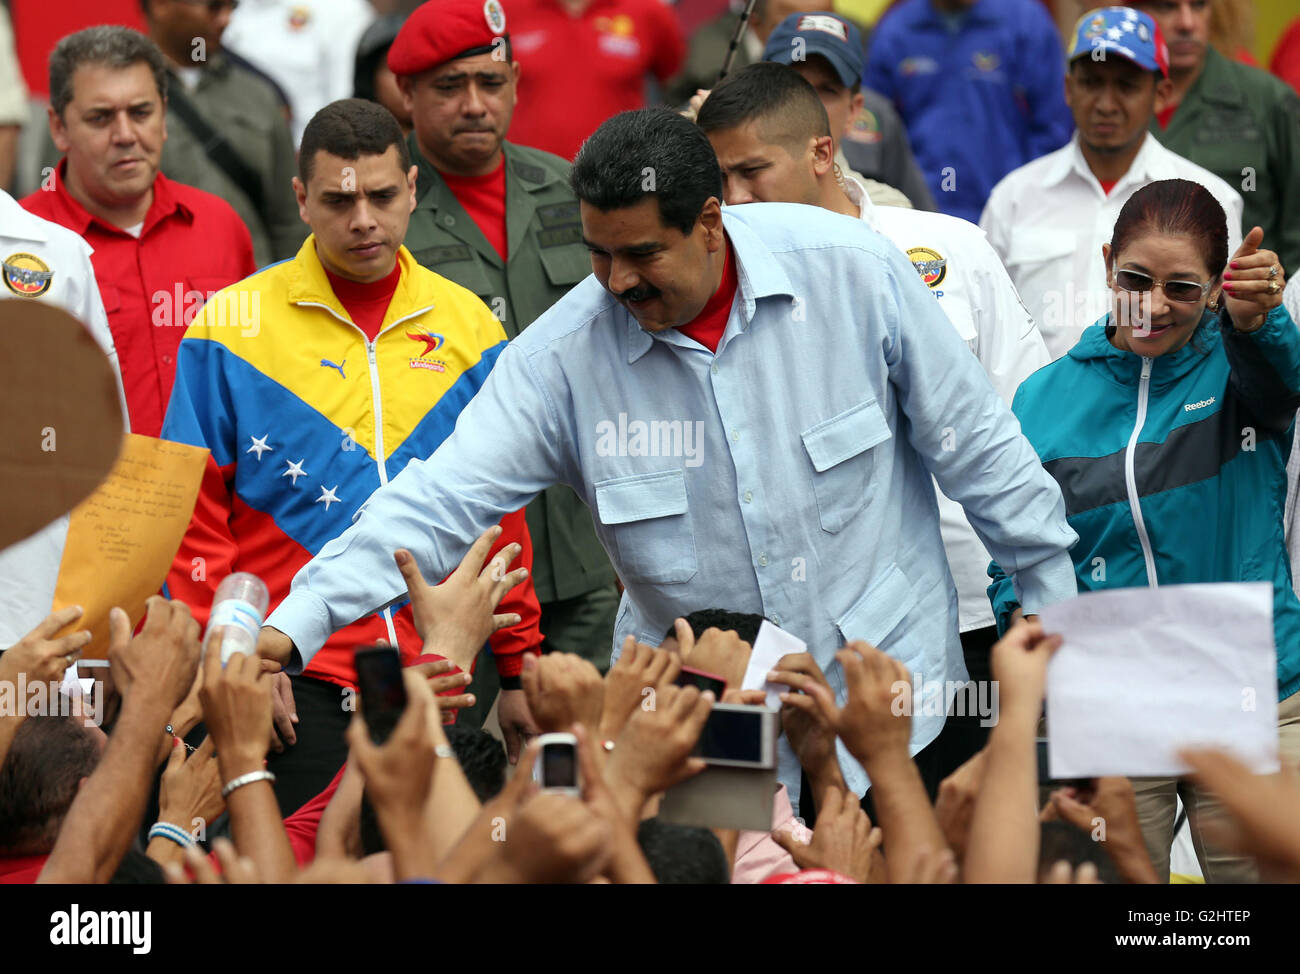 El extraño adiós manual Caracas, Venezuela. El 31 de mayo, 2016. El Presidente de Venezuela,  Nicolás Maduro, saluda a un grupo de personas durante una manifestación en  apoyo a su gobierno en Caracas, Venezuela, el 31